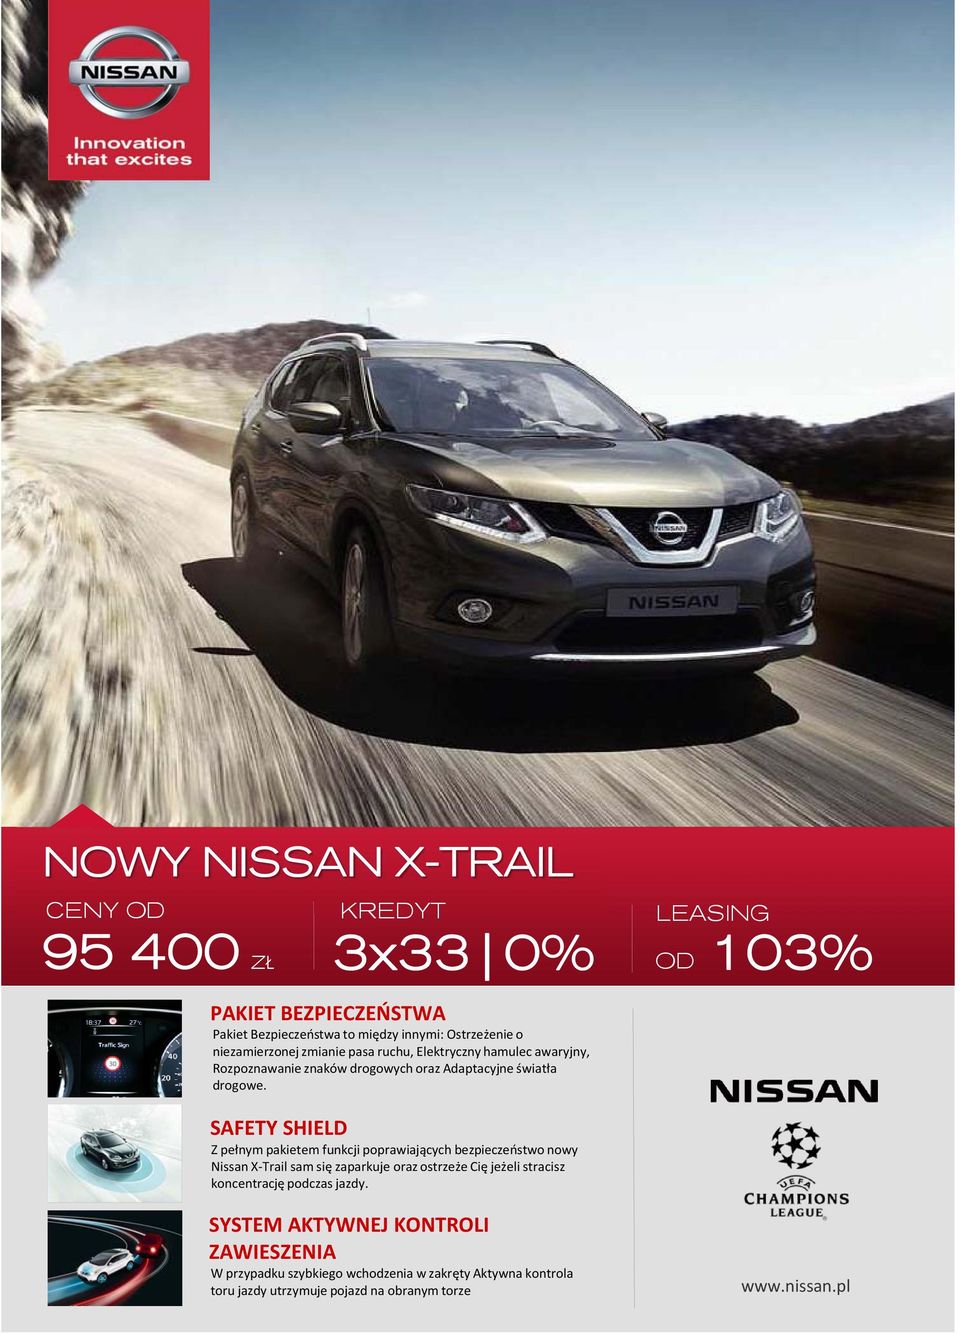 LEASING OD 103% SAFETY SHIELD Z pełnym pakietem funkcji poprawiających bezpieczeństwo nowy Nissan X Trail sam się zaparkuje oraz ostrzeże Cię jeżeli